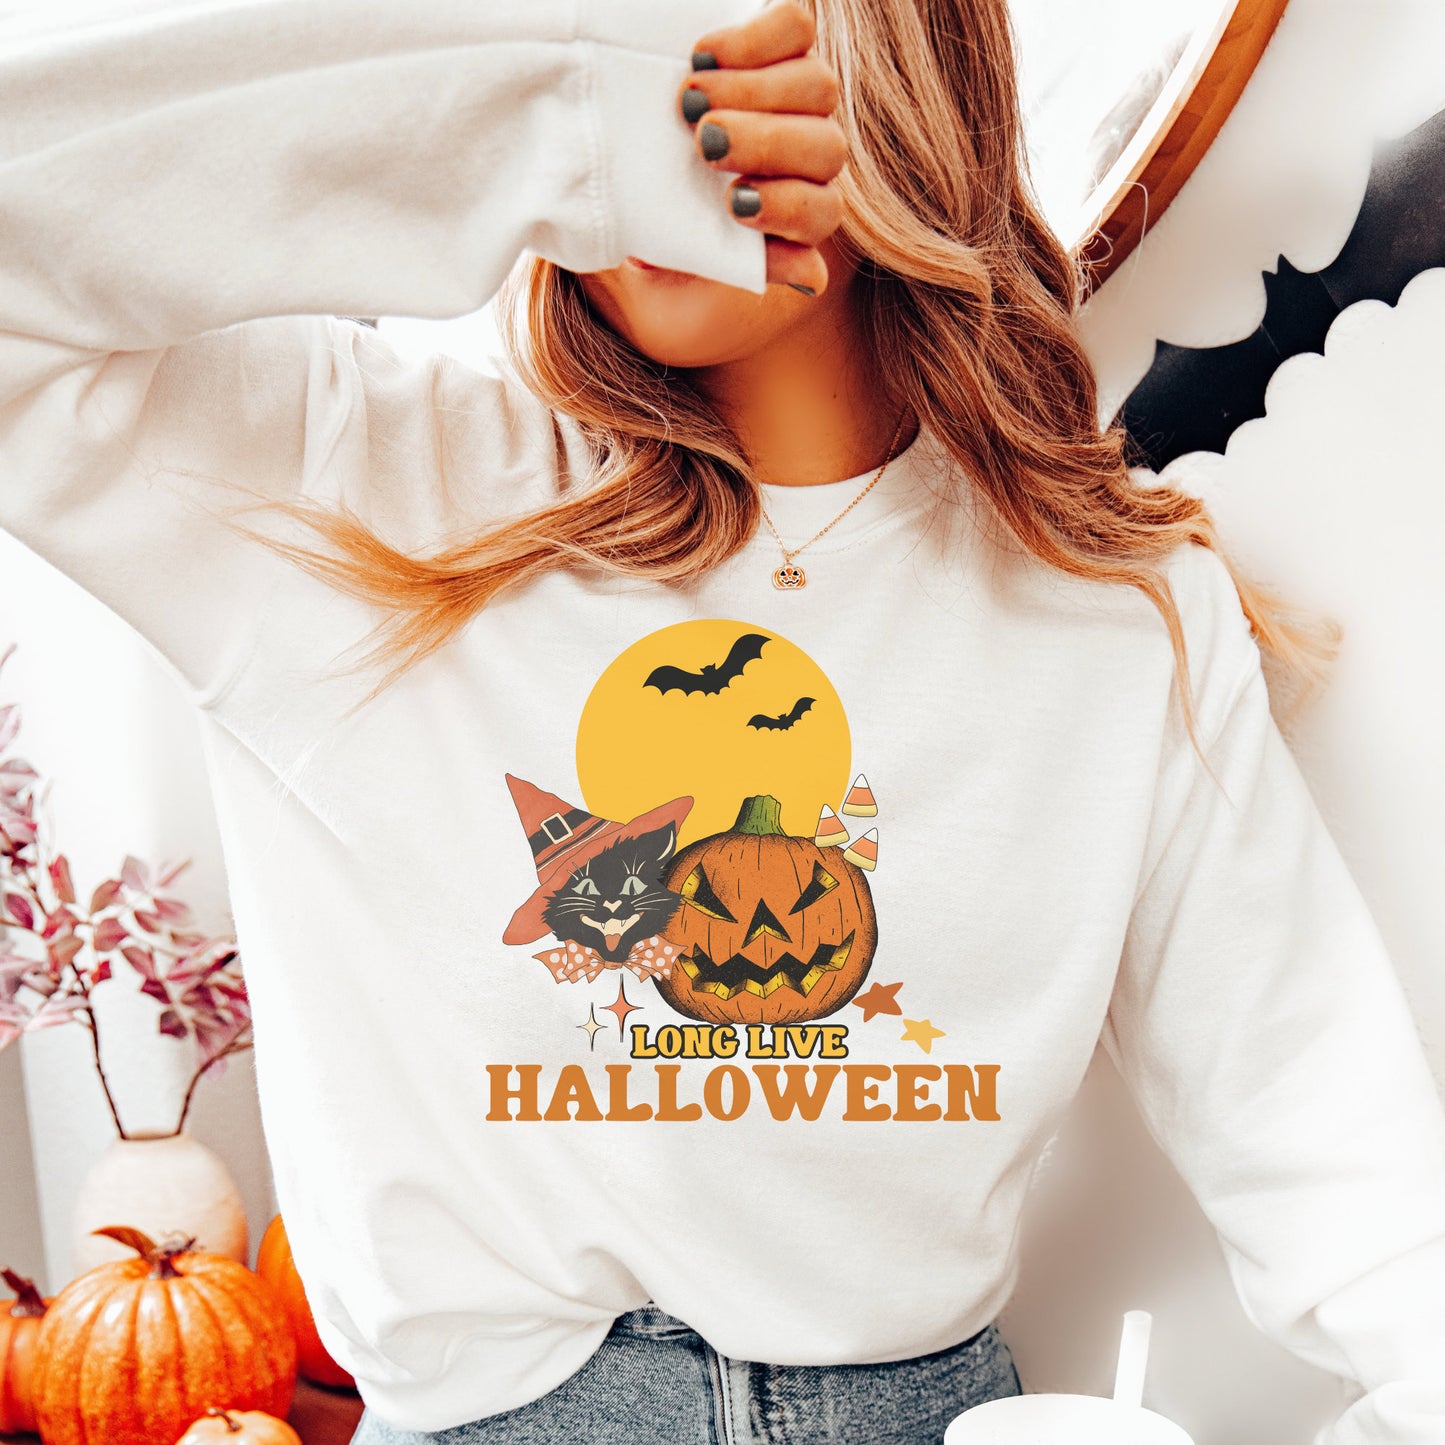 Halloween Shirt Long Live Halloween, Vintage Halloween Shirt, Retro Halloween, Comfort Colors, Spooky Season, Pumpkin Shirt Black Cat, Ghost